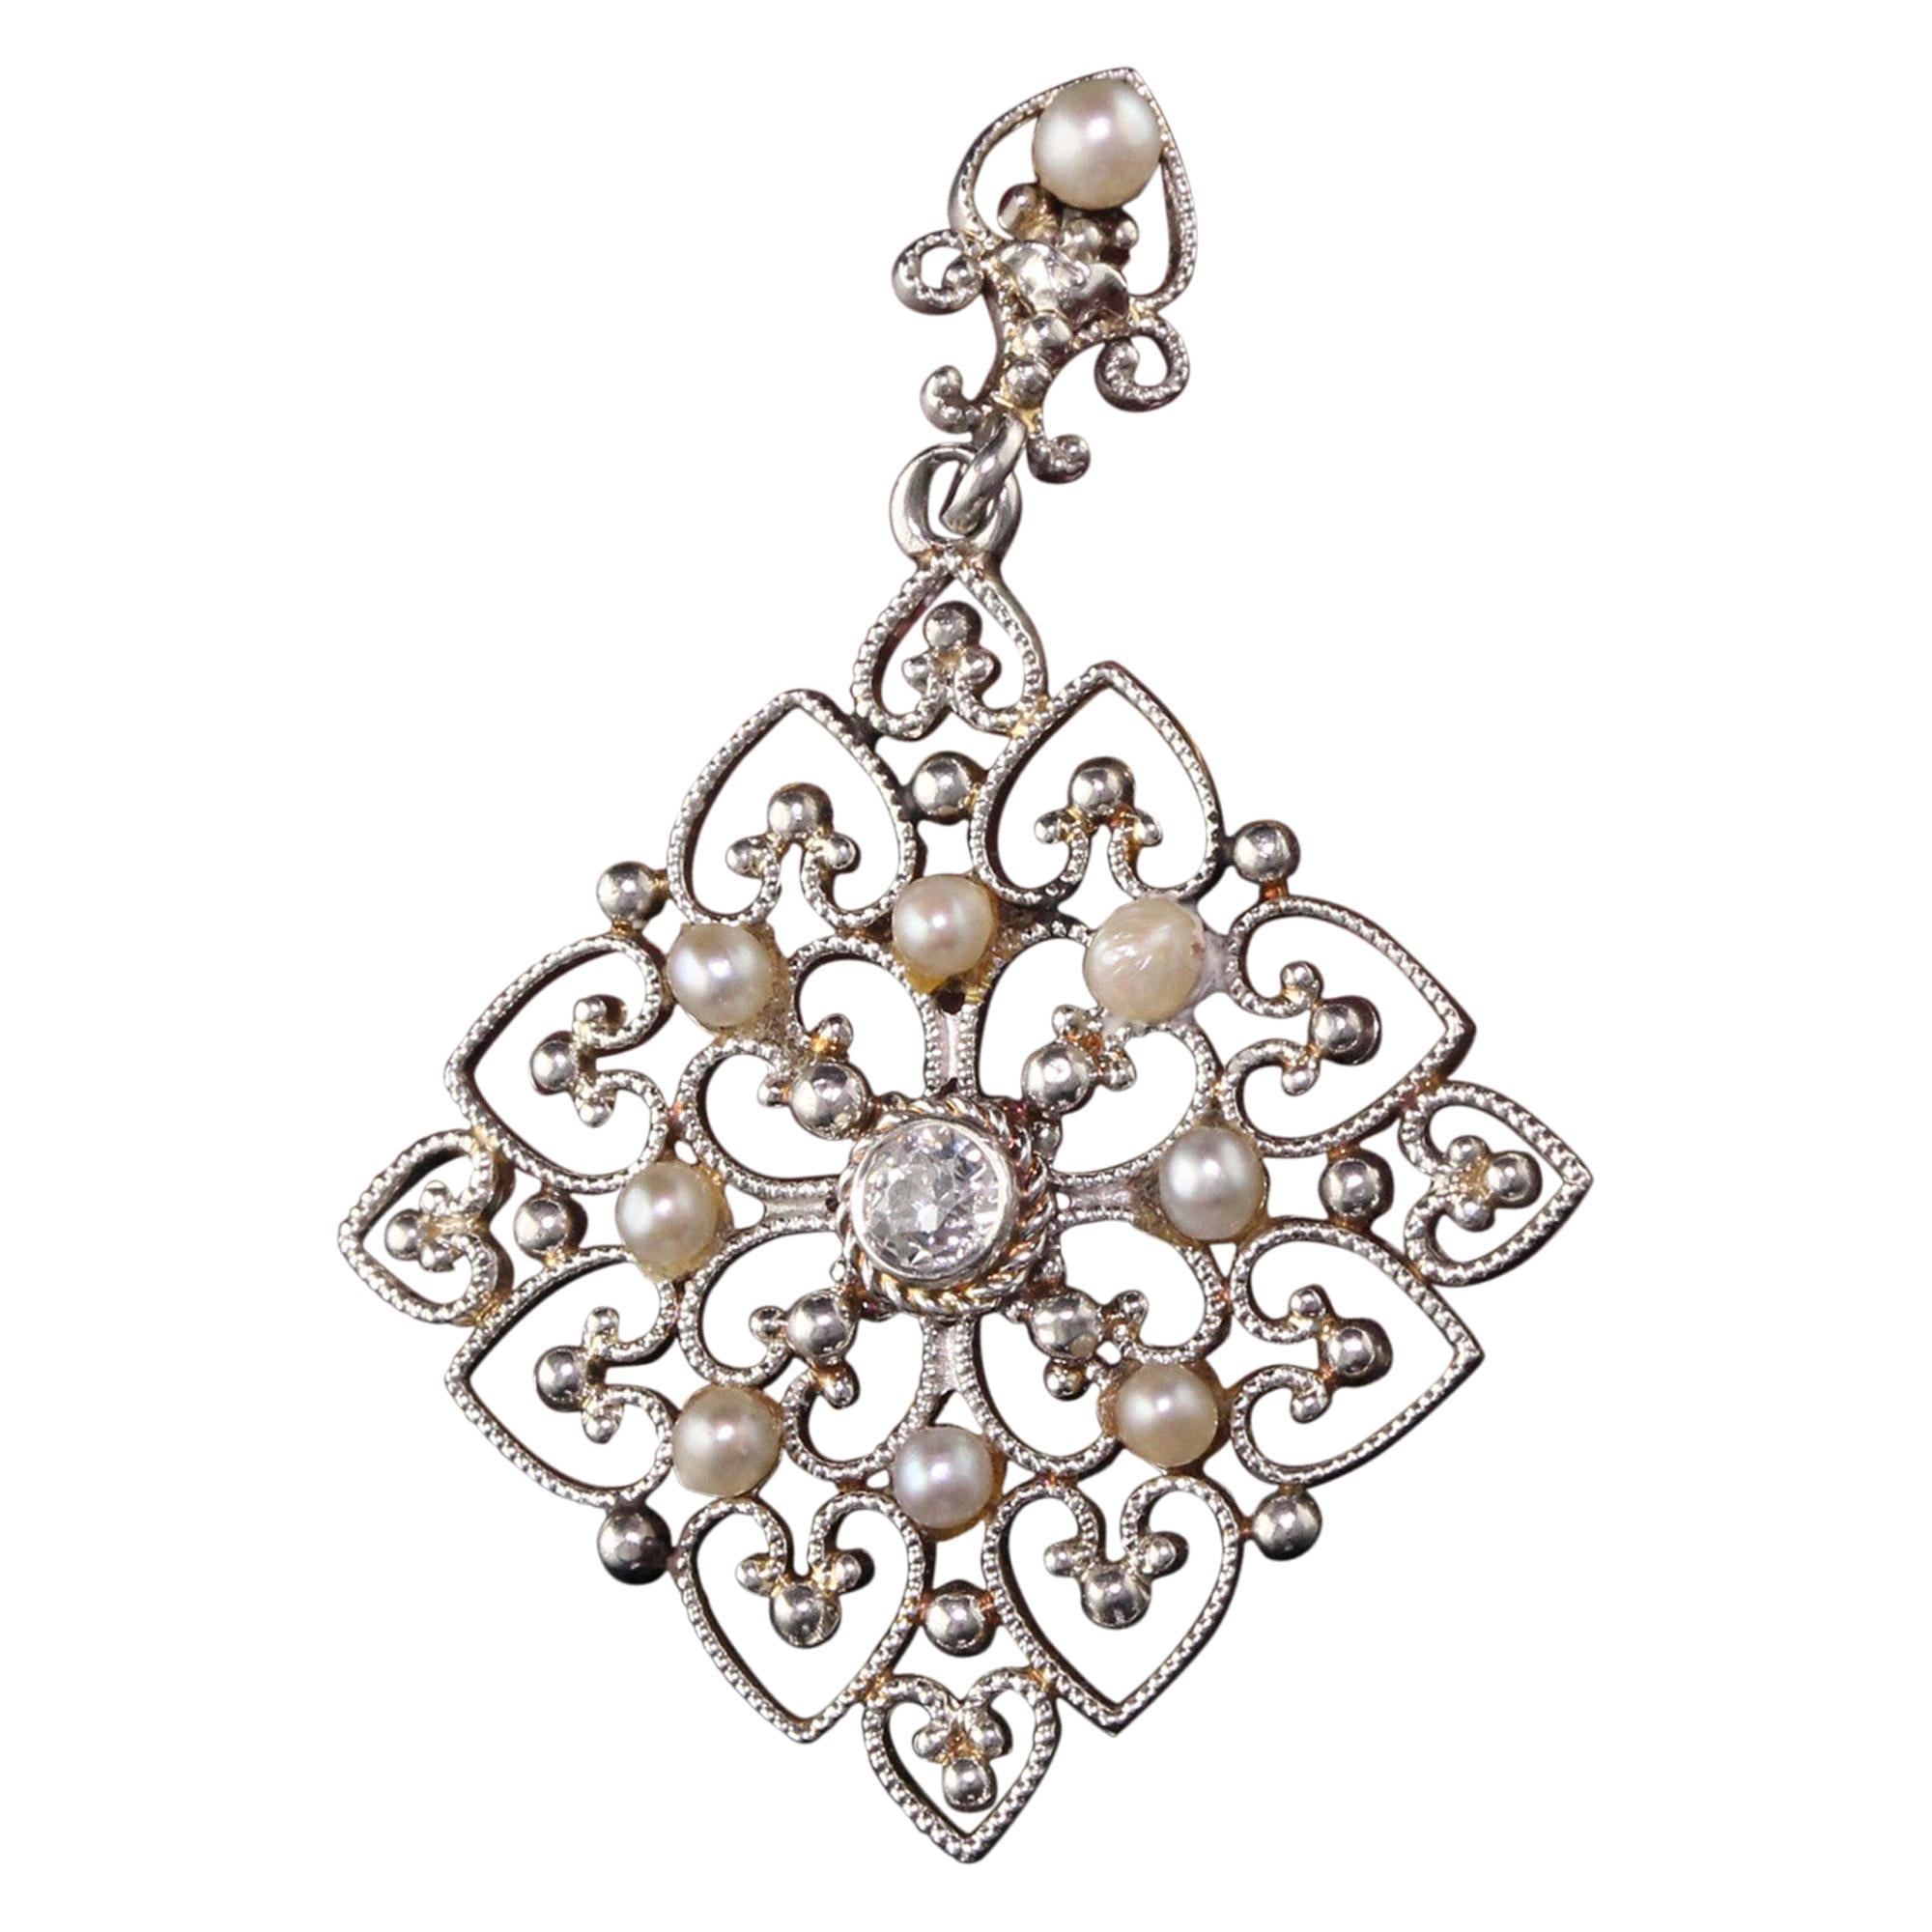 Antique Platinum Art Deco Old European Diamond and Pearl Pendant